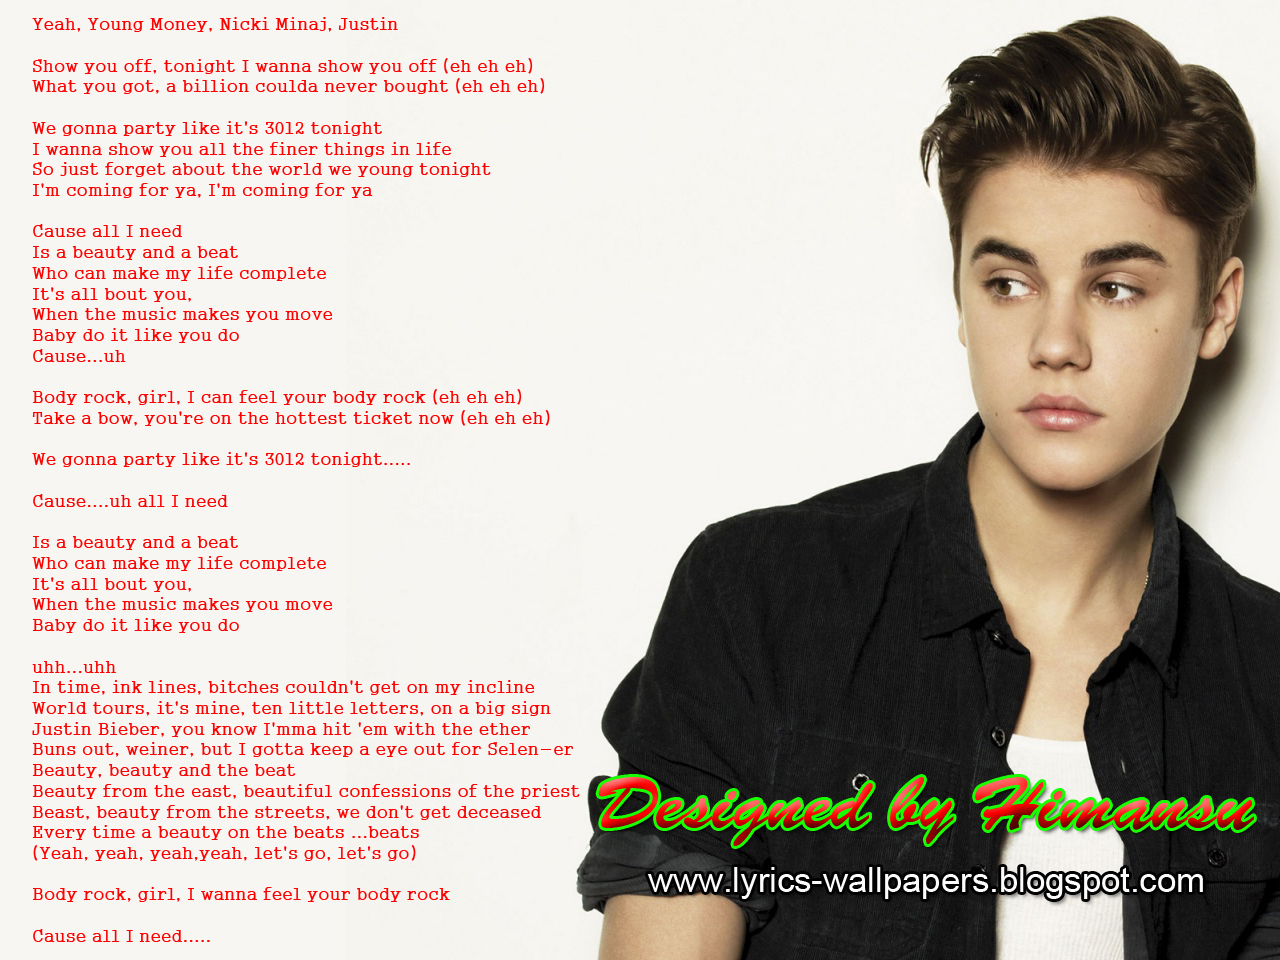 https://blogger.googleusercontent.com/img/b/R29vZ2xl/AVvXsEgq7ZU-t2B4qHUHkRWsWRsQtzhuoarbgpoZtSBjD0jNBrfQF5qQpBKMvVEZDqEObpB7fMu7oUfdquE759s0b4uwyPwQRrlbZmBmSxkJDHMqE8wjrM1GW5-EN4e6PuriBB53sKaK1deJSqE/s1600/Lyrics+Wallpapers+-+Justin+Bieber+featuring+Nicki+Minaj+-+Beauty+and+a+Beat.jpg